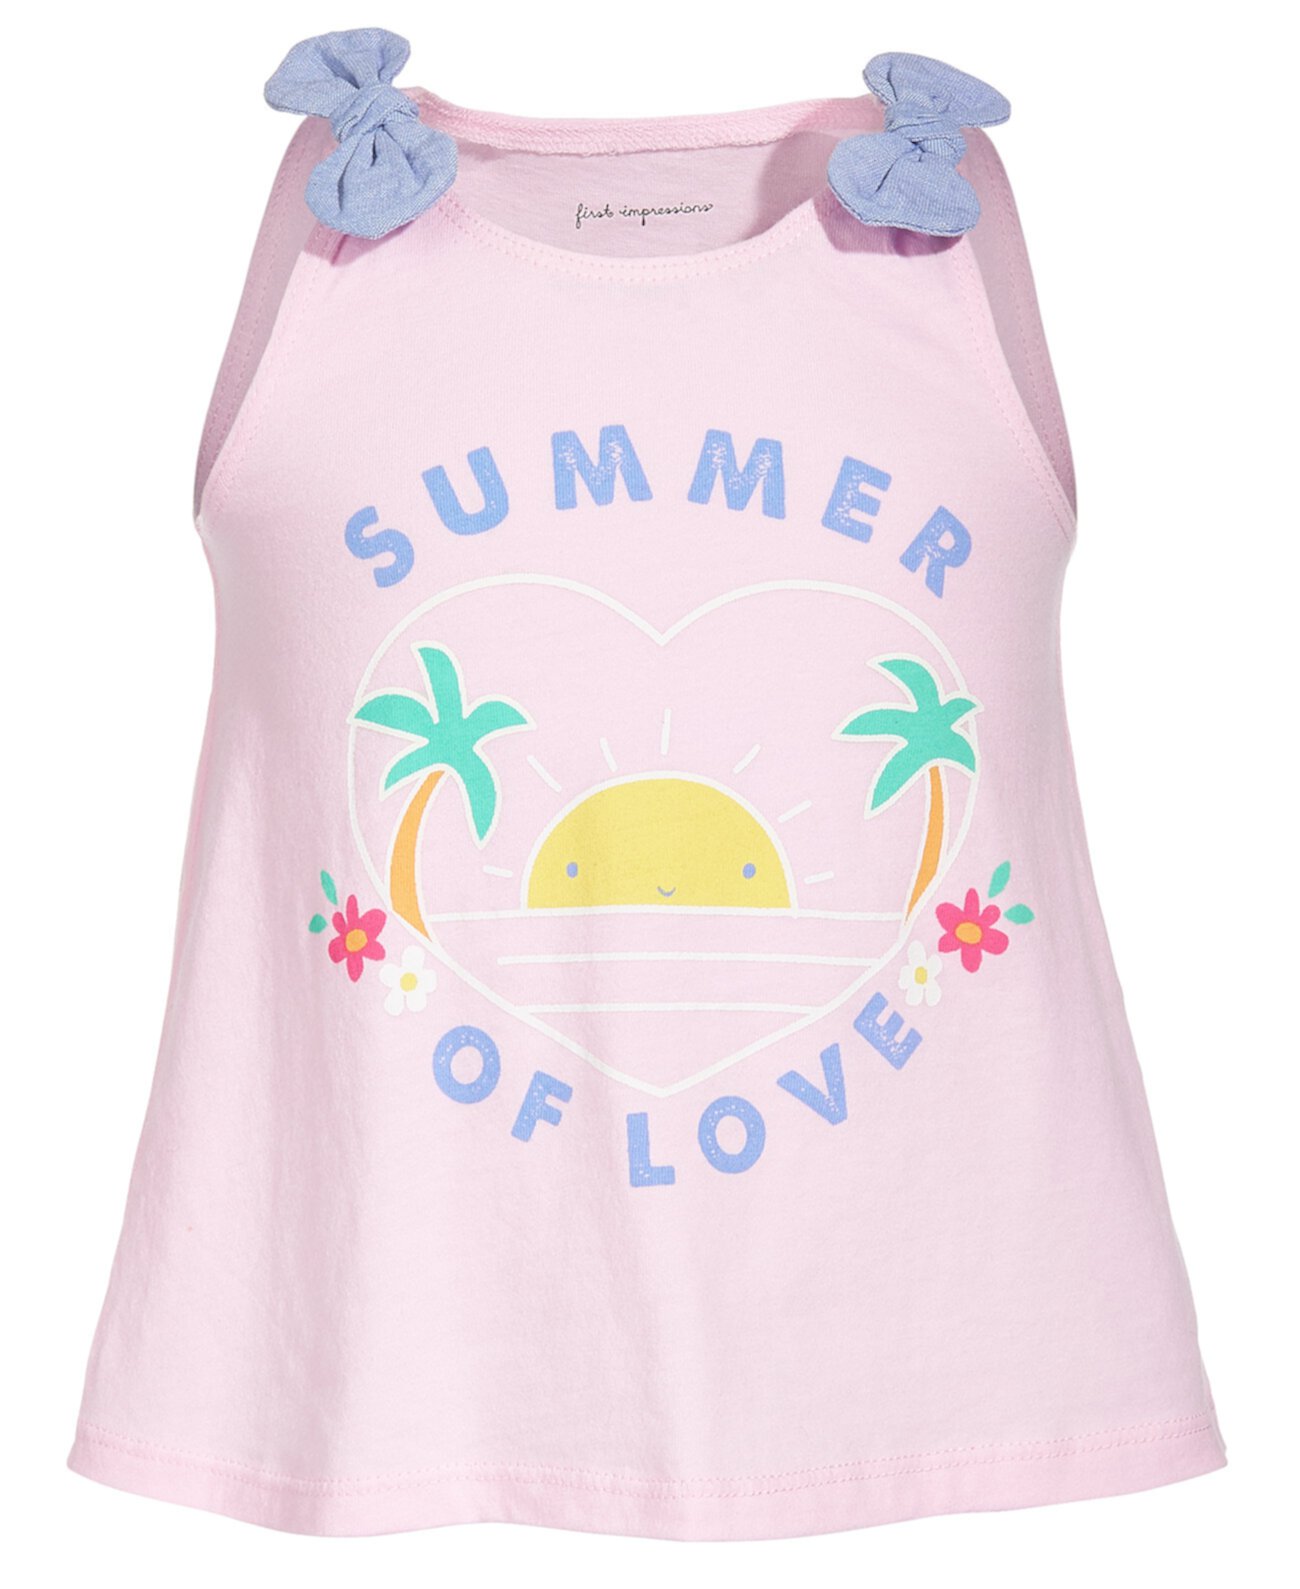 Хлопковый топ для маленьких девочек Summer Love, созданный для Macy's First Impressions